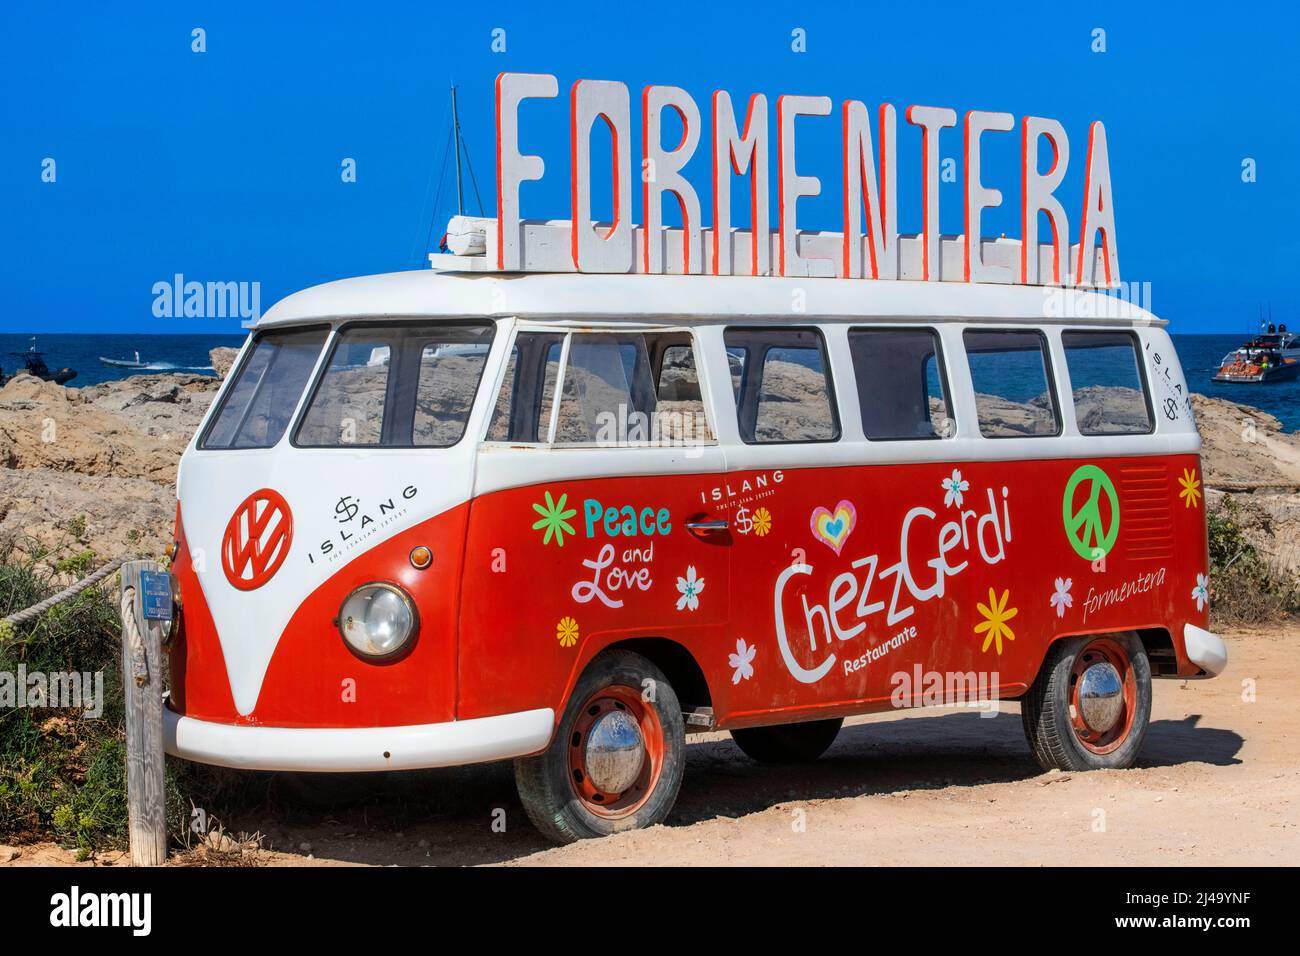 Classic Volkswagen rosso e bianco tipo 2 camper van sulla spiaggia es Pujols, Cheszz Gerdi bar spiaggia ristorante pubblicità, Balearis Isole, Formentera, Spa Foto Stock